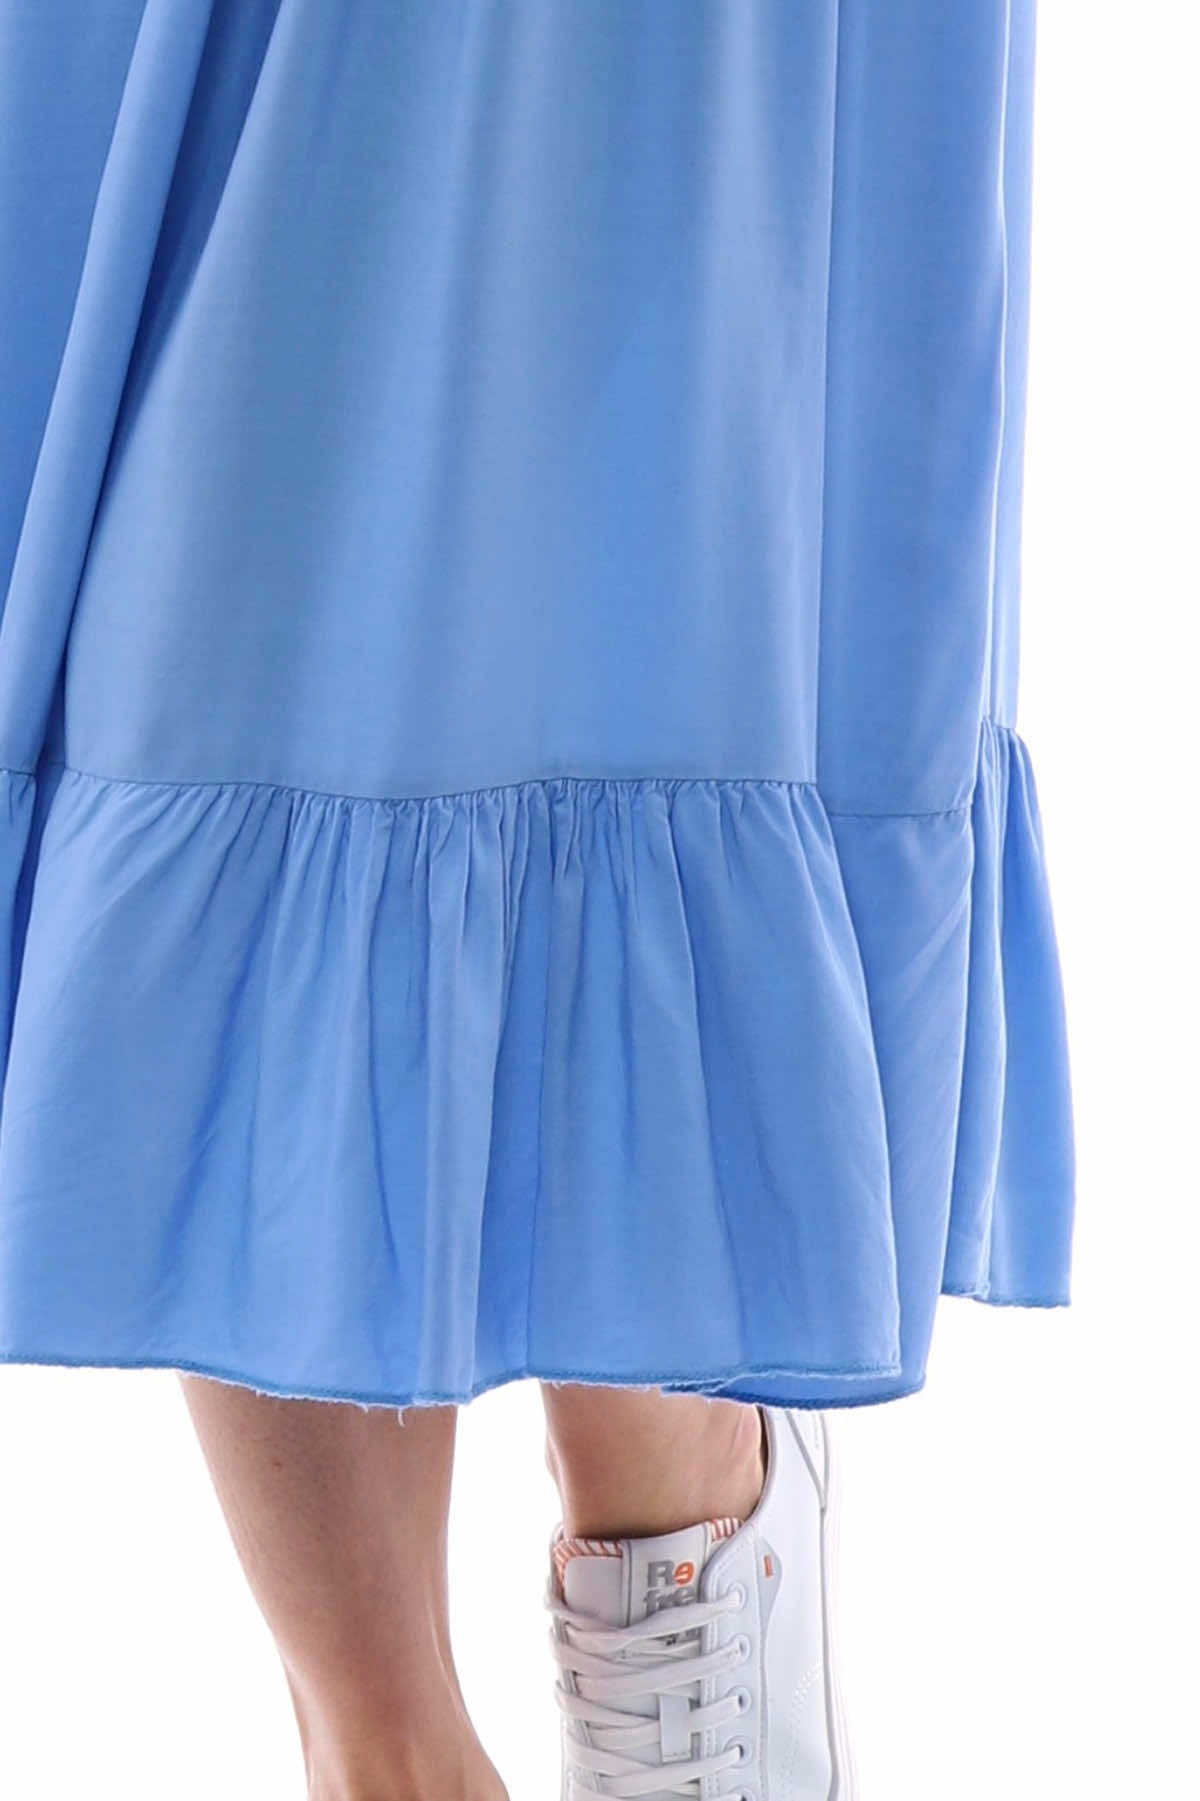 Juniper Plain Sleeveless Dress Powder Blue